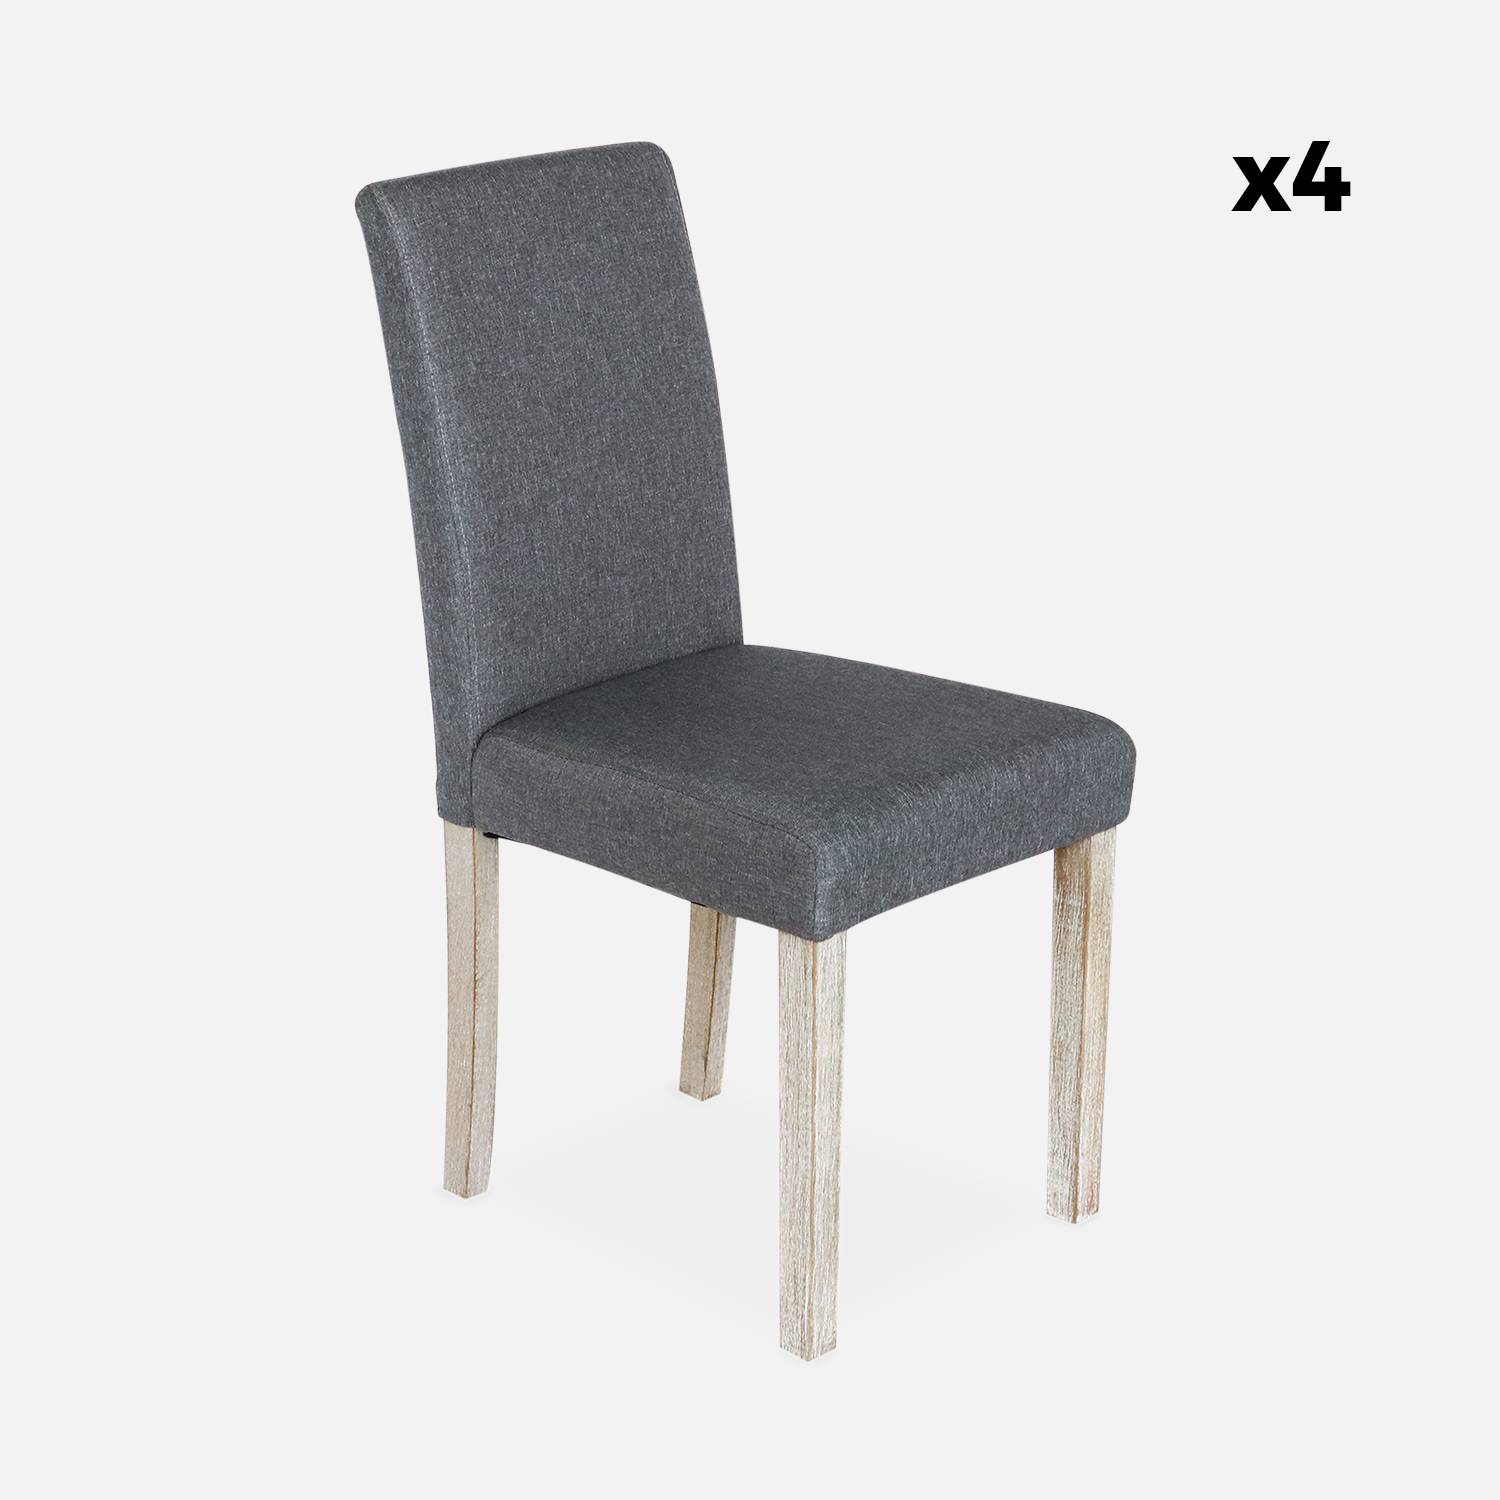 Conjunto de 4 sillas - Rita - sillas de tela, patas madera lacada ,sweeek,Photo6